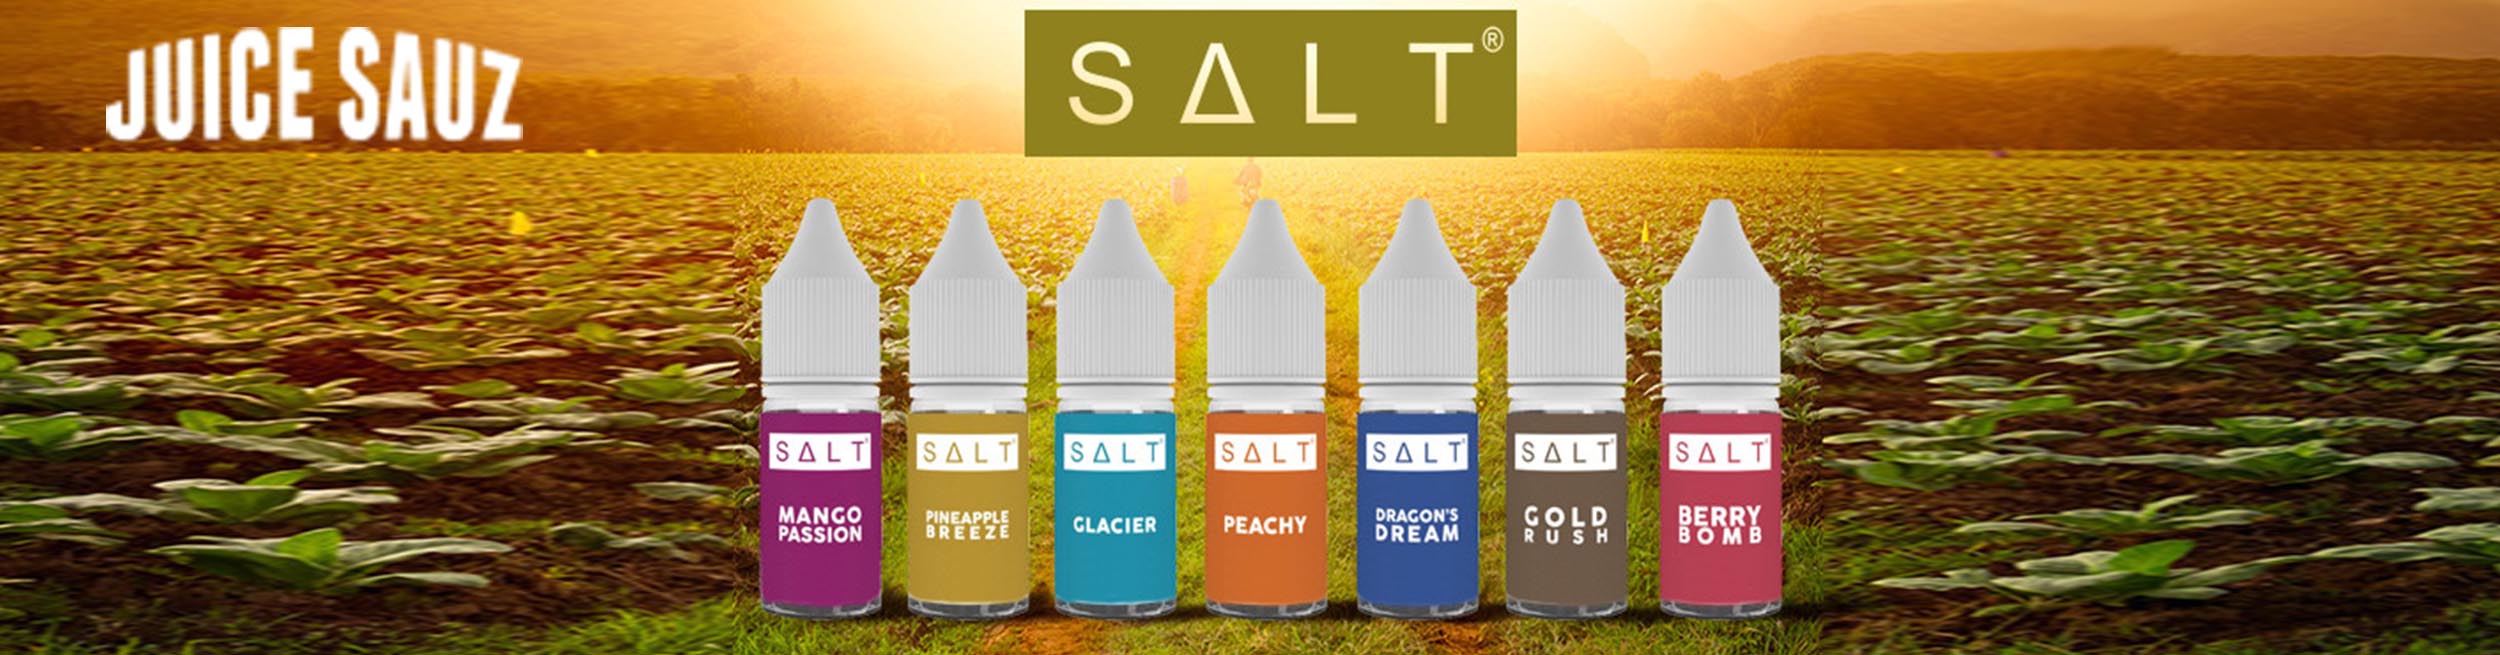 Juice Sauz SALT